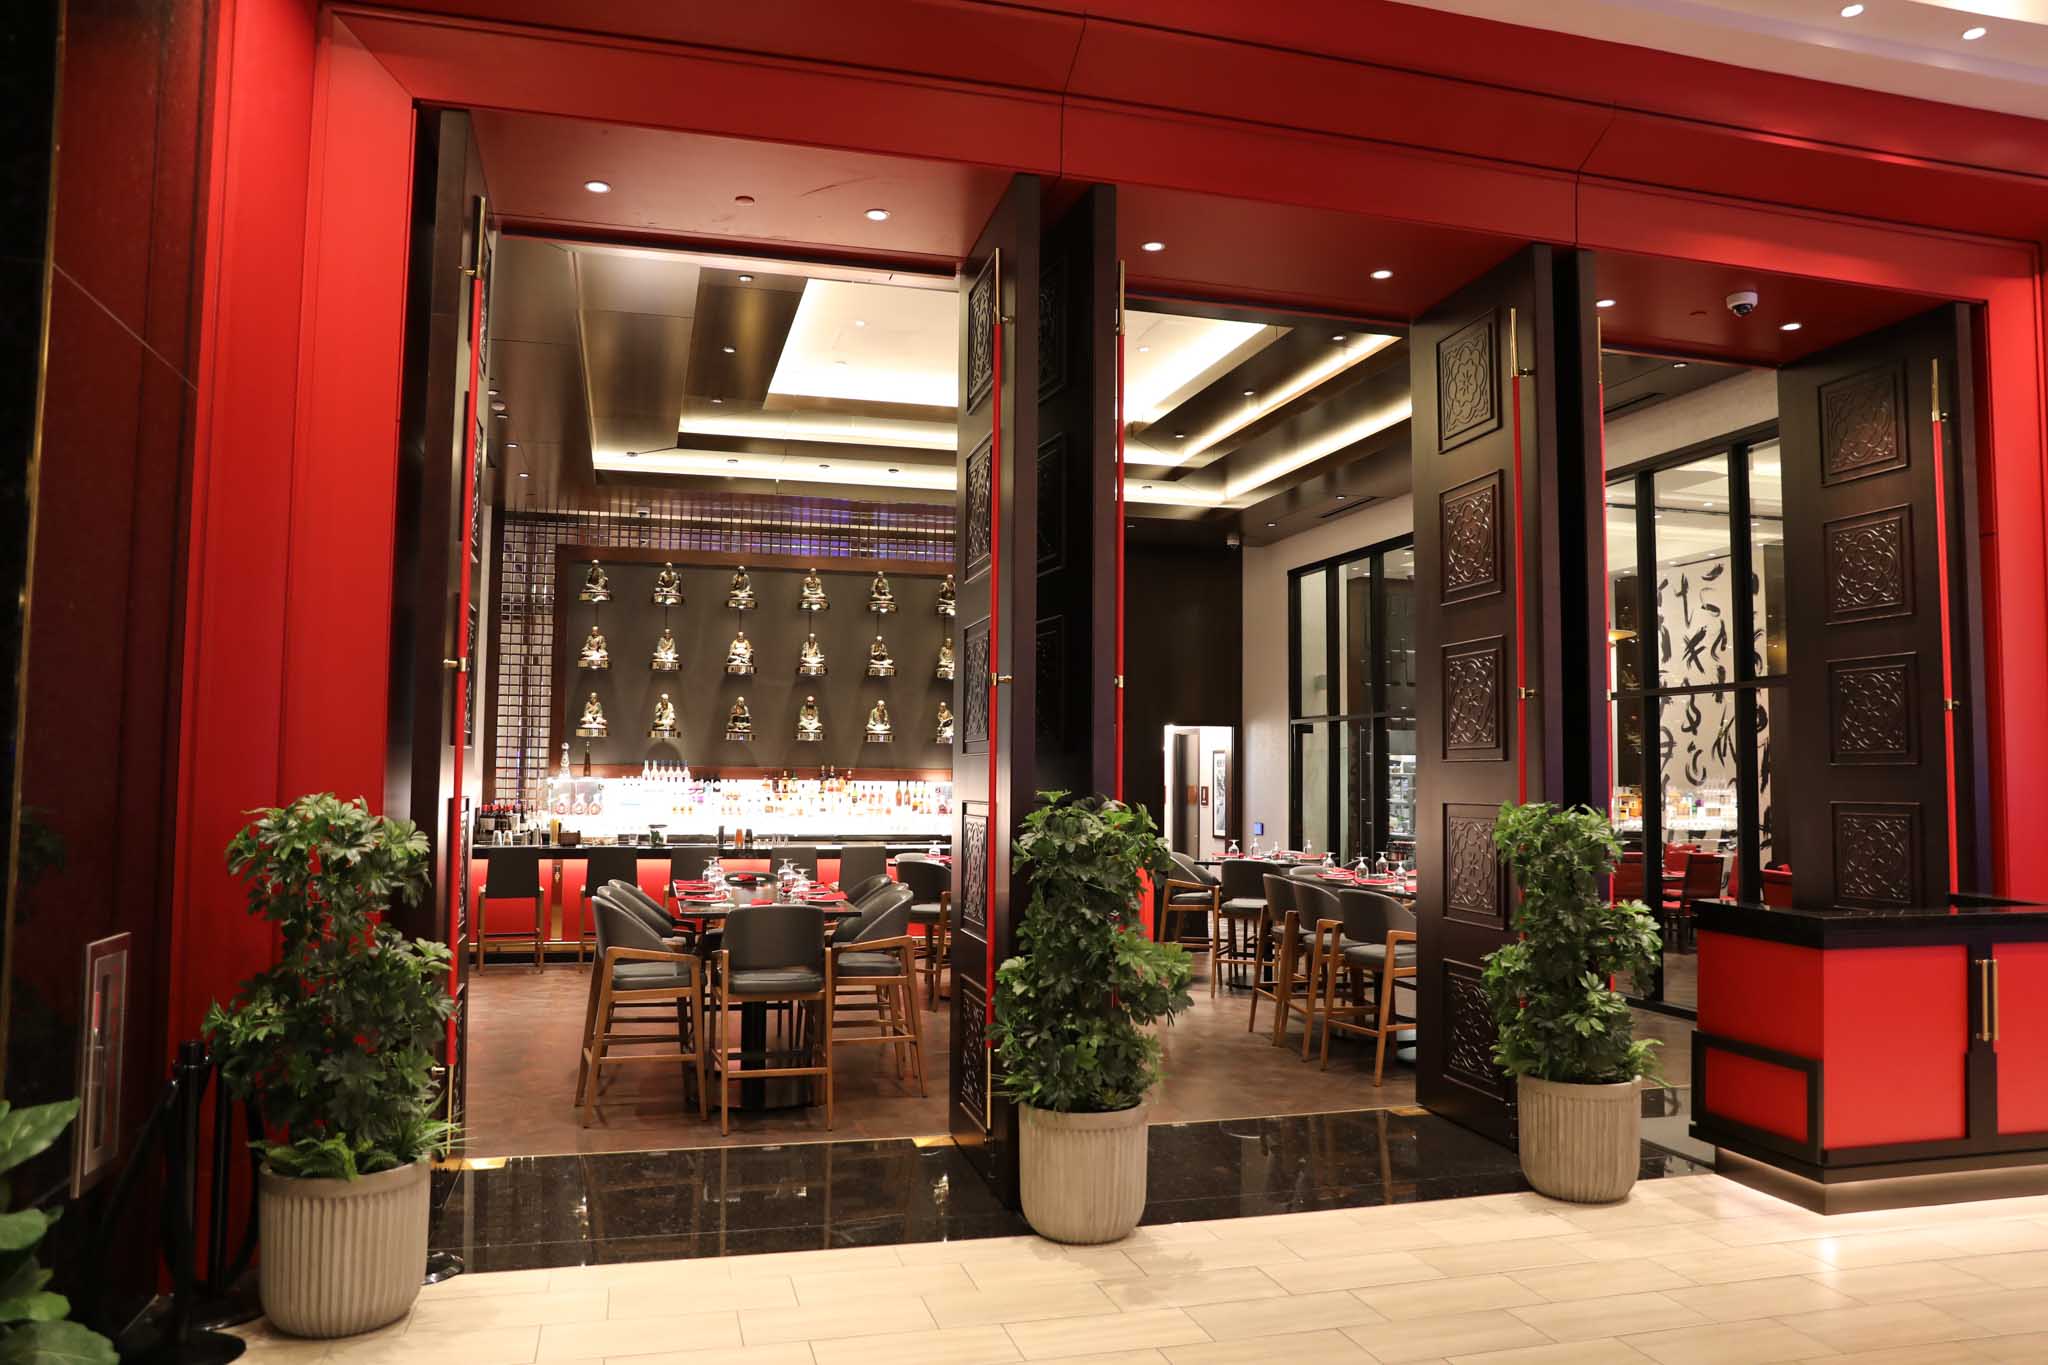 享誉湾区的中餐厅「俏龙轩」正式进驻「天河大赌场」